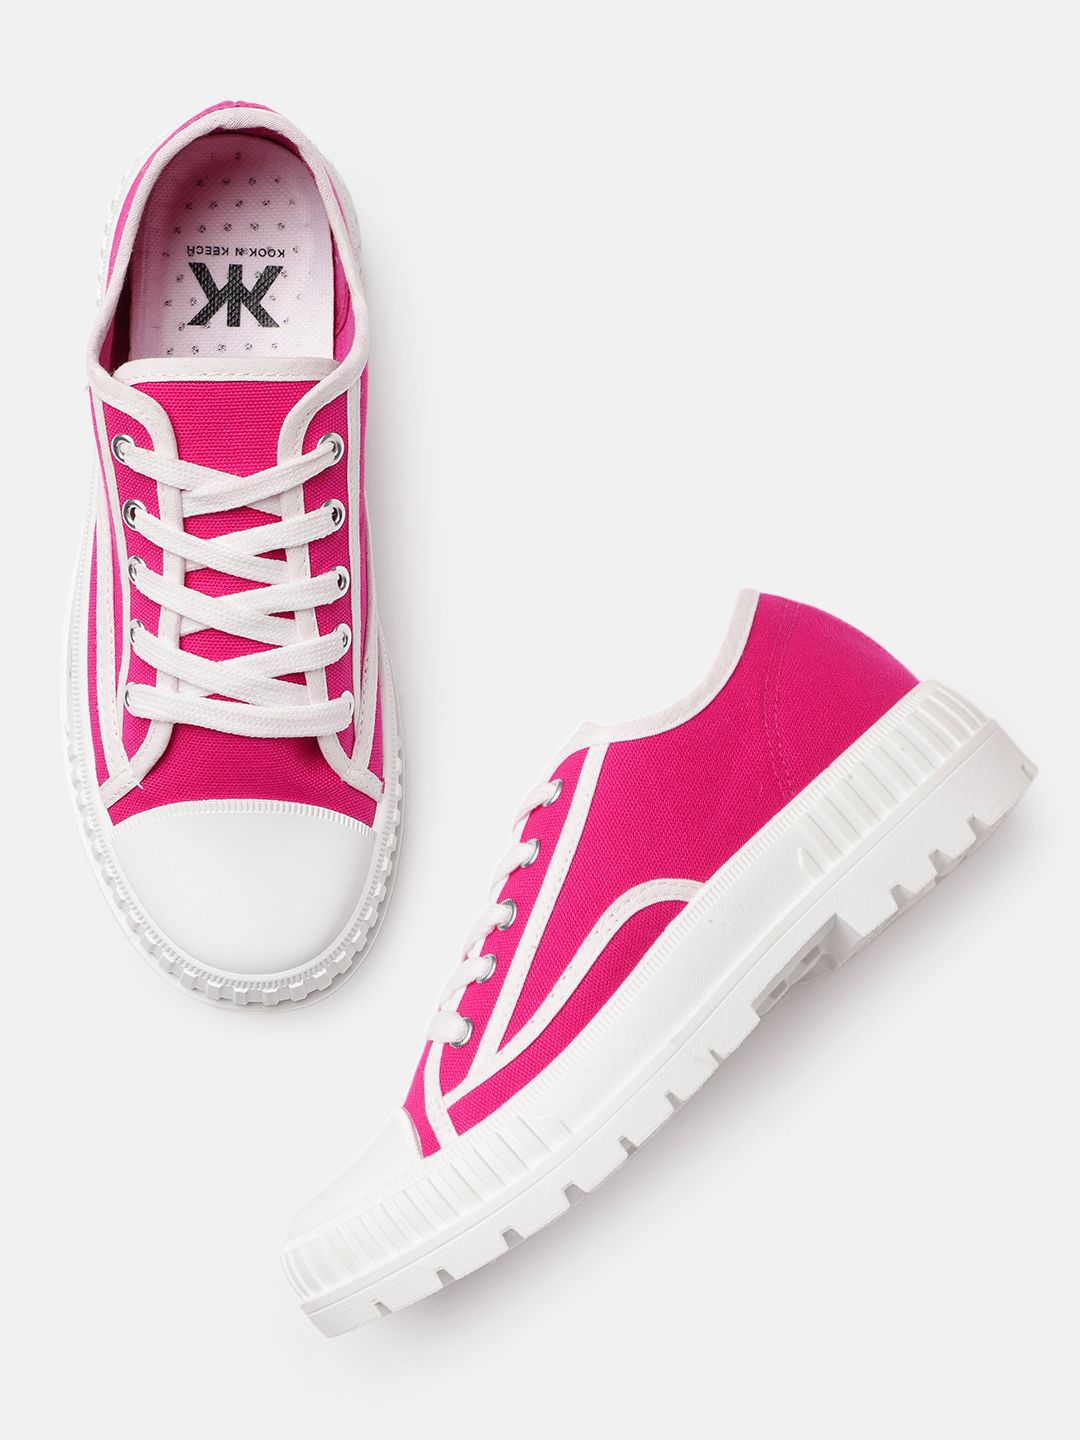 Kook N Keech Women Pink Solid Sneakers Price in India